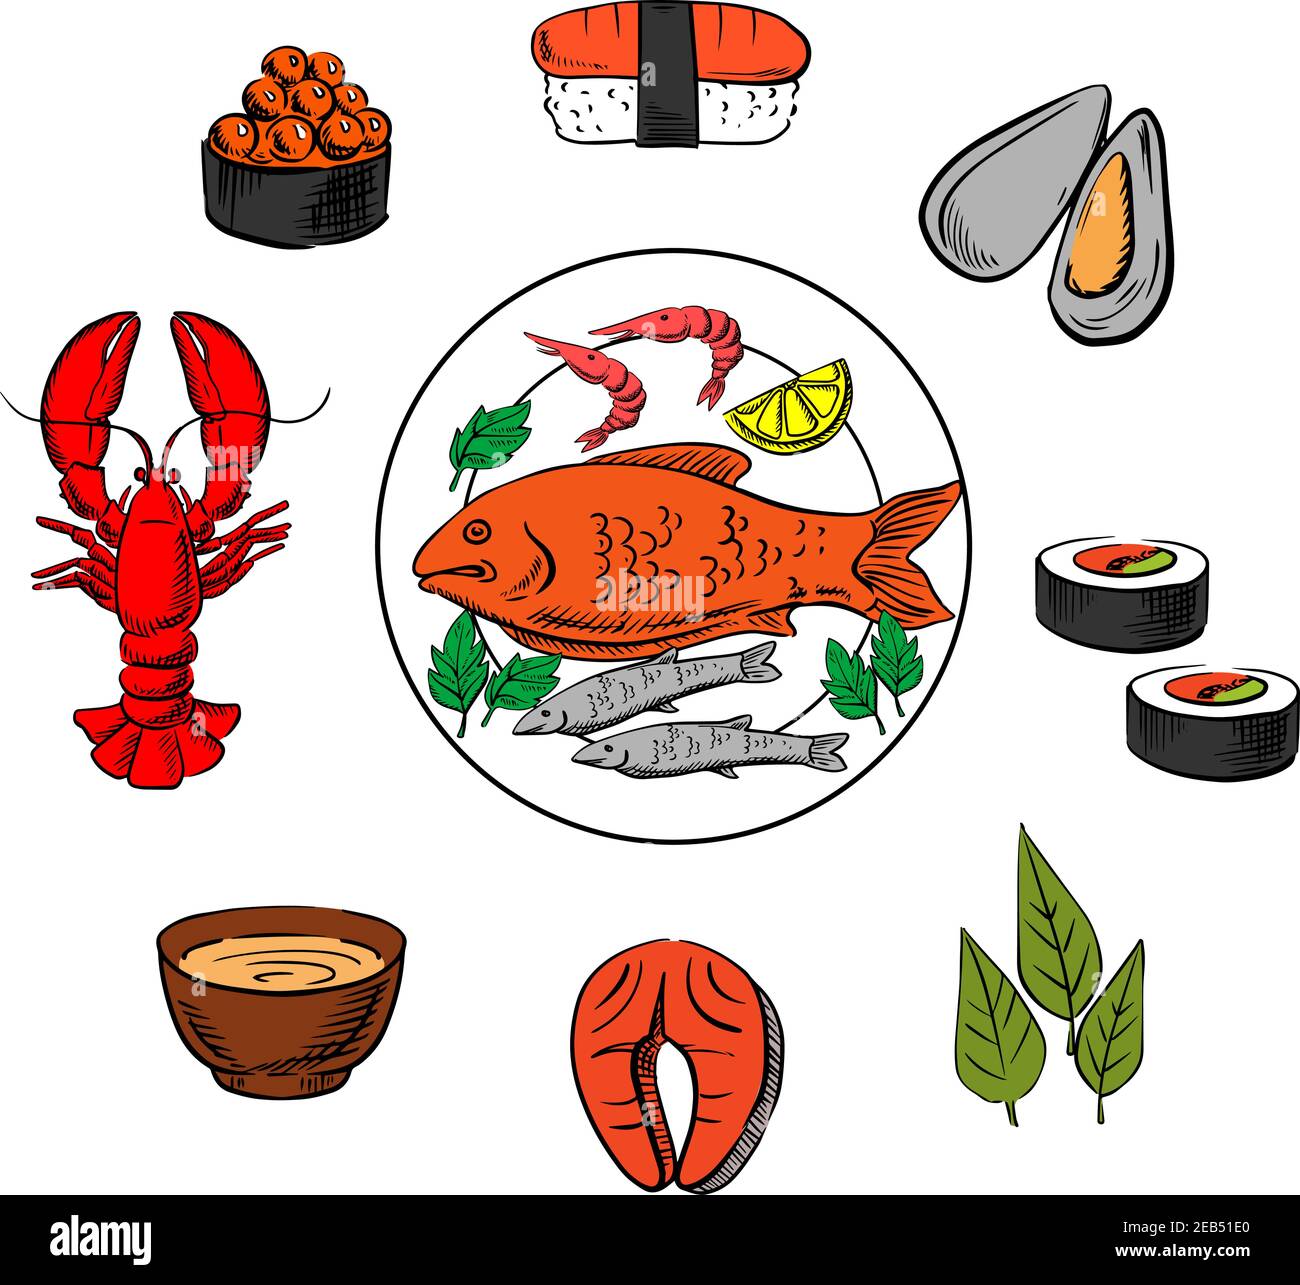 Frutti di mare, pesce e condimenti con caviale e sushi, cozze e alghe, pesce rosso, salmone, salsa e aragosta Illustrazione Vettoriale